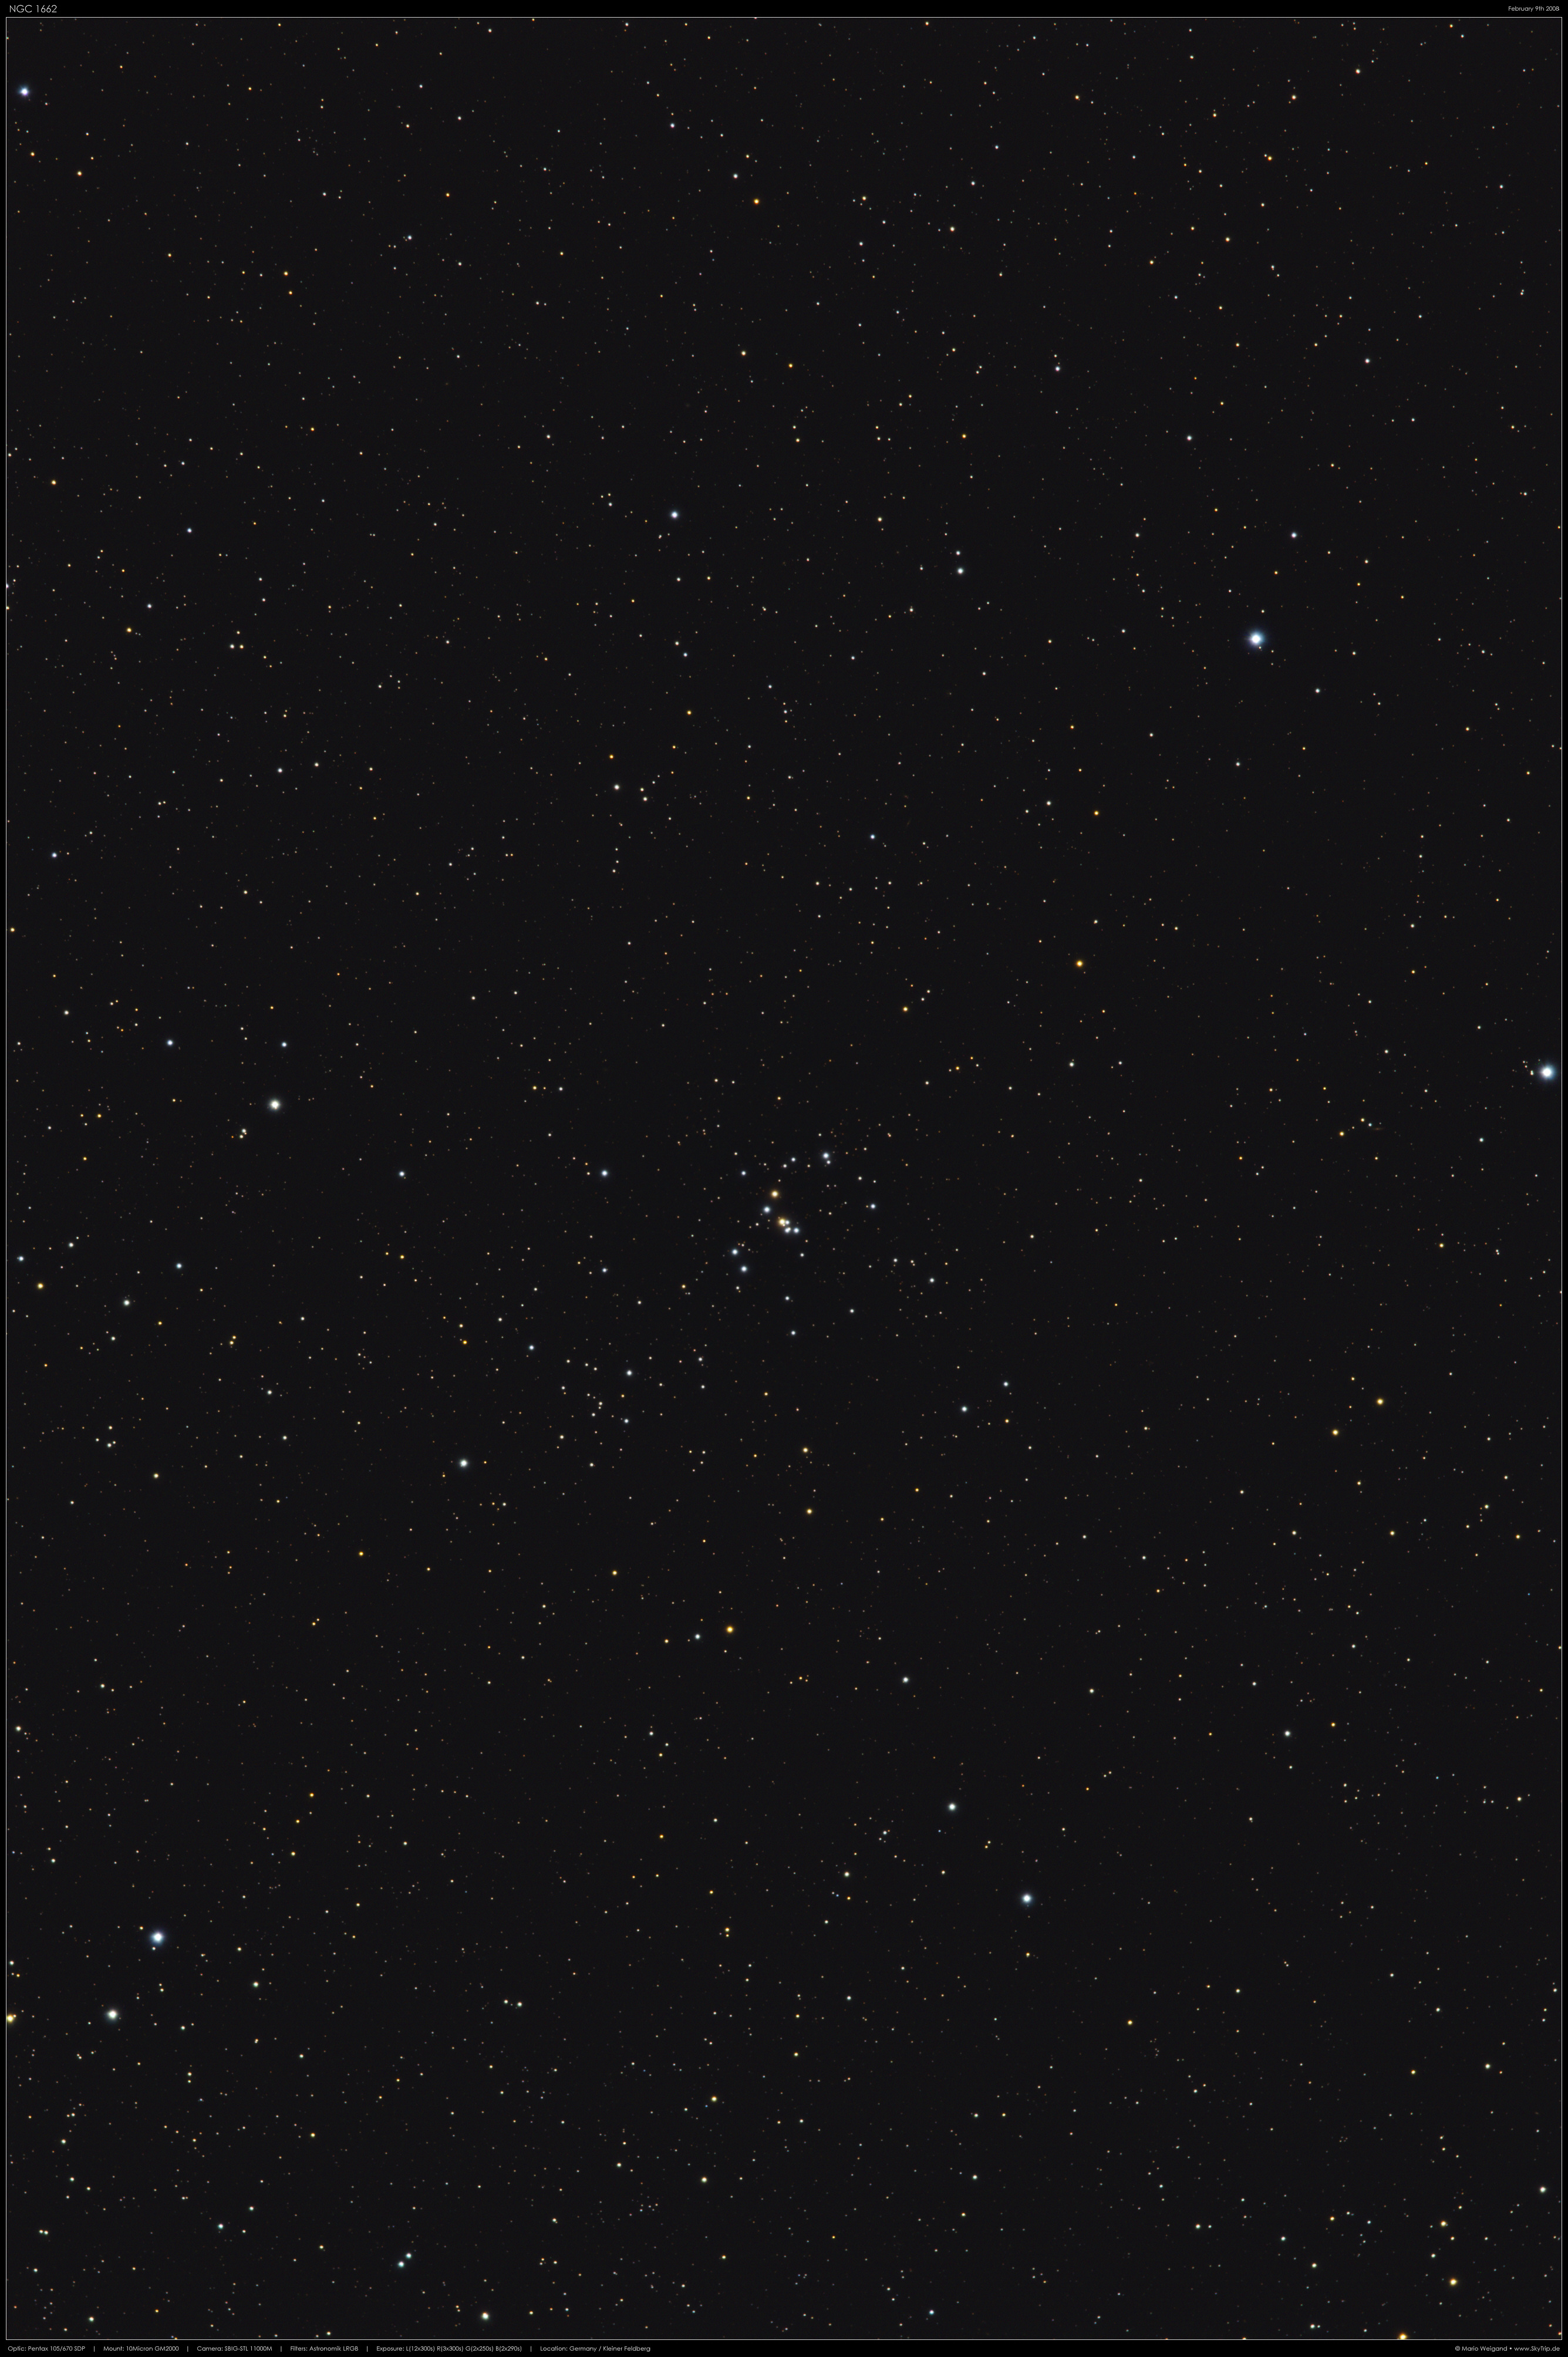 Sternhaufen NGC 1662